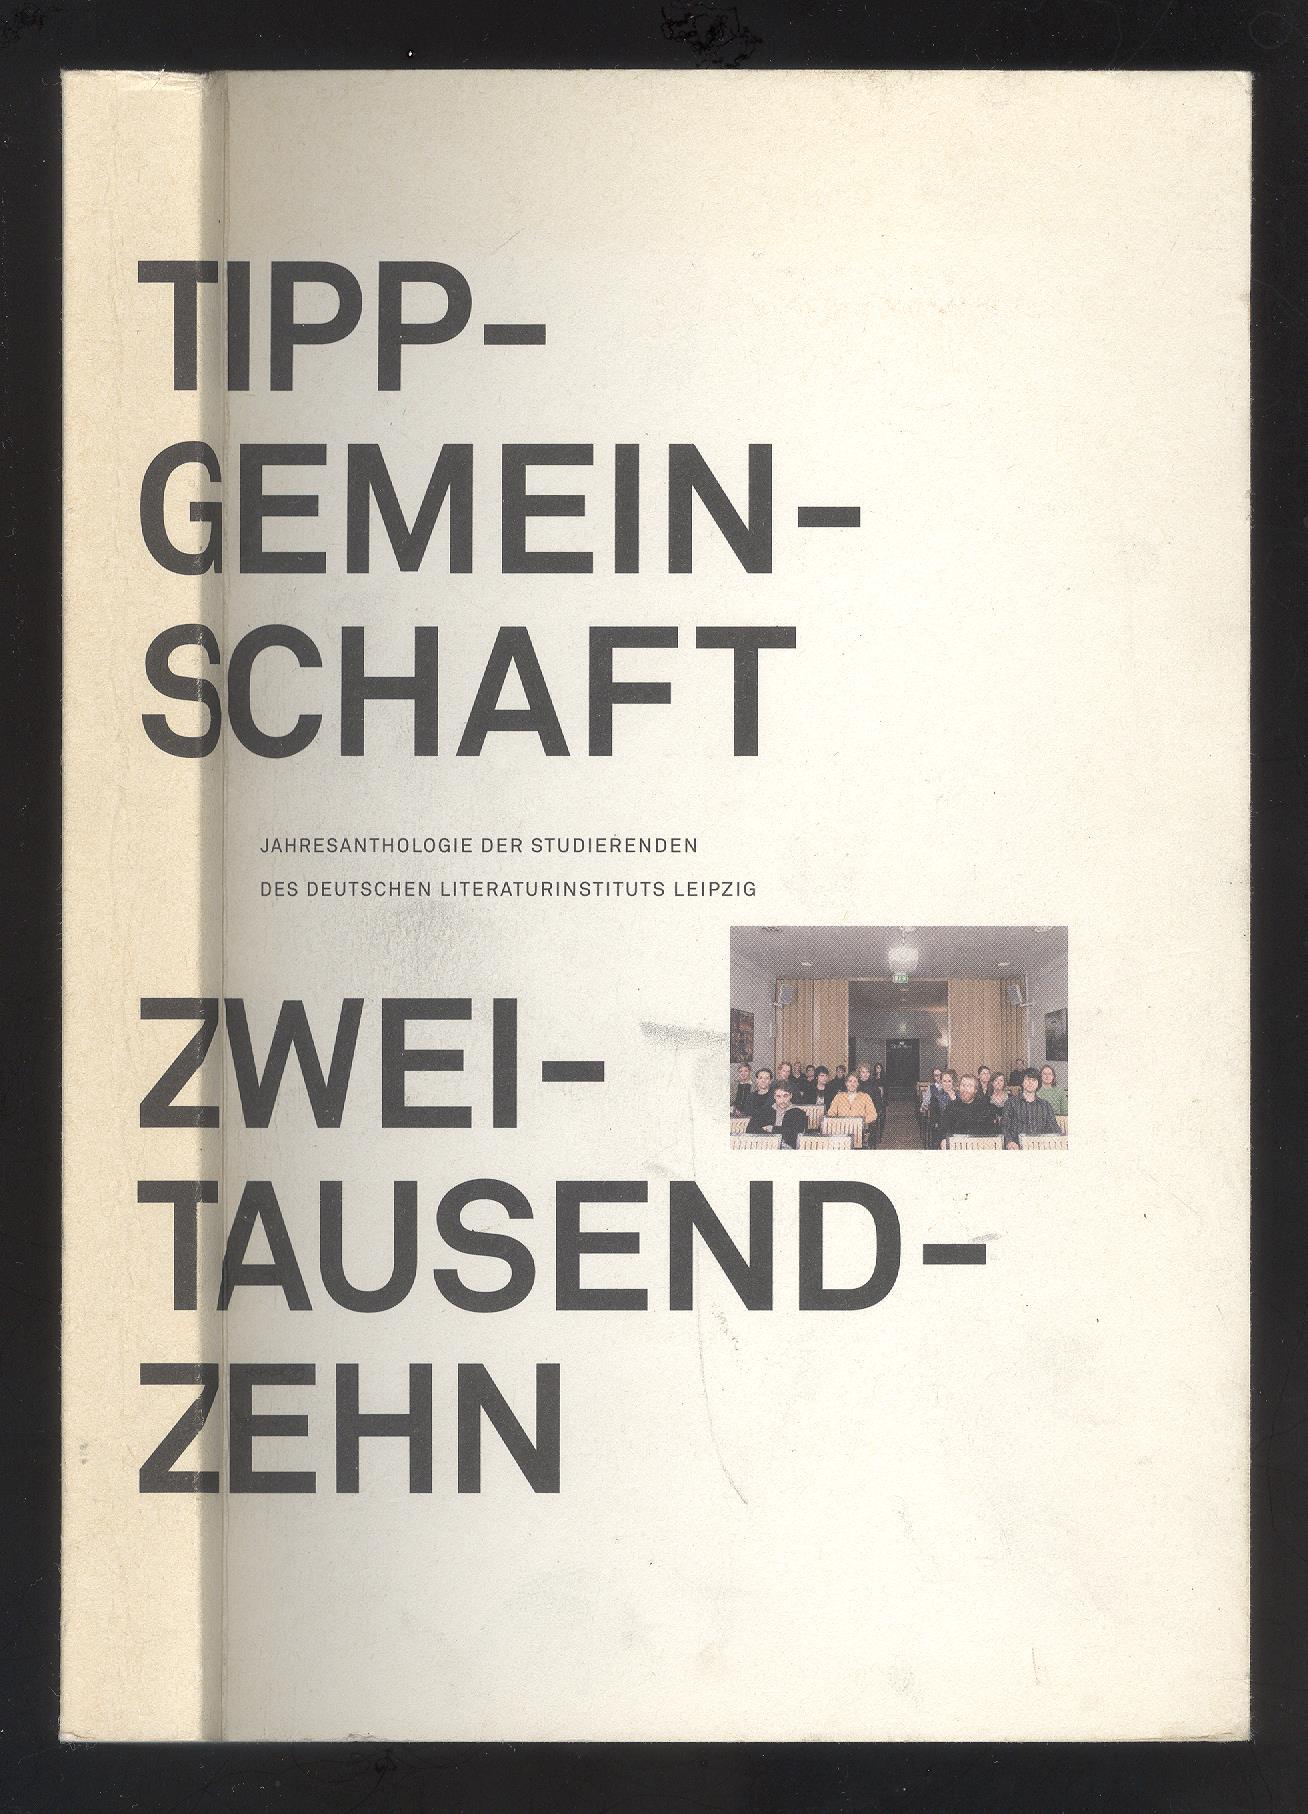 Tippgemeinschaft 2010. Jahresanthologie der Studierenden des Deutschen Literaturinstituts Leipzig (DLL).